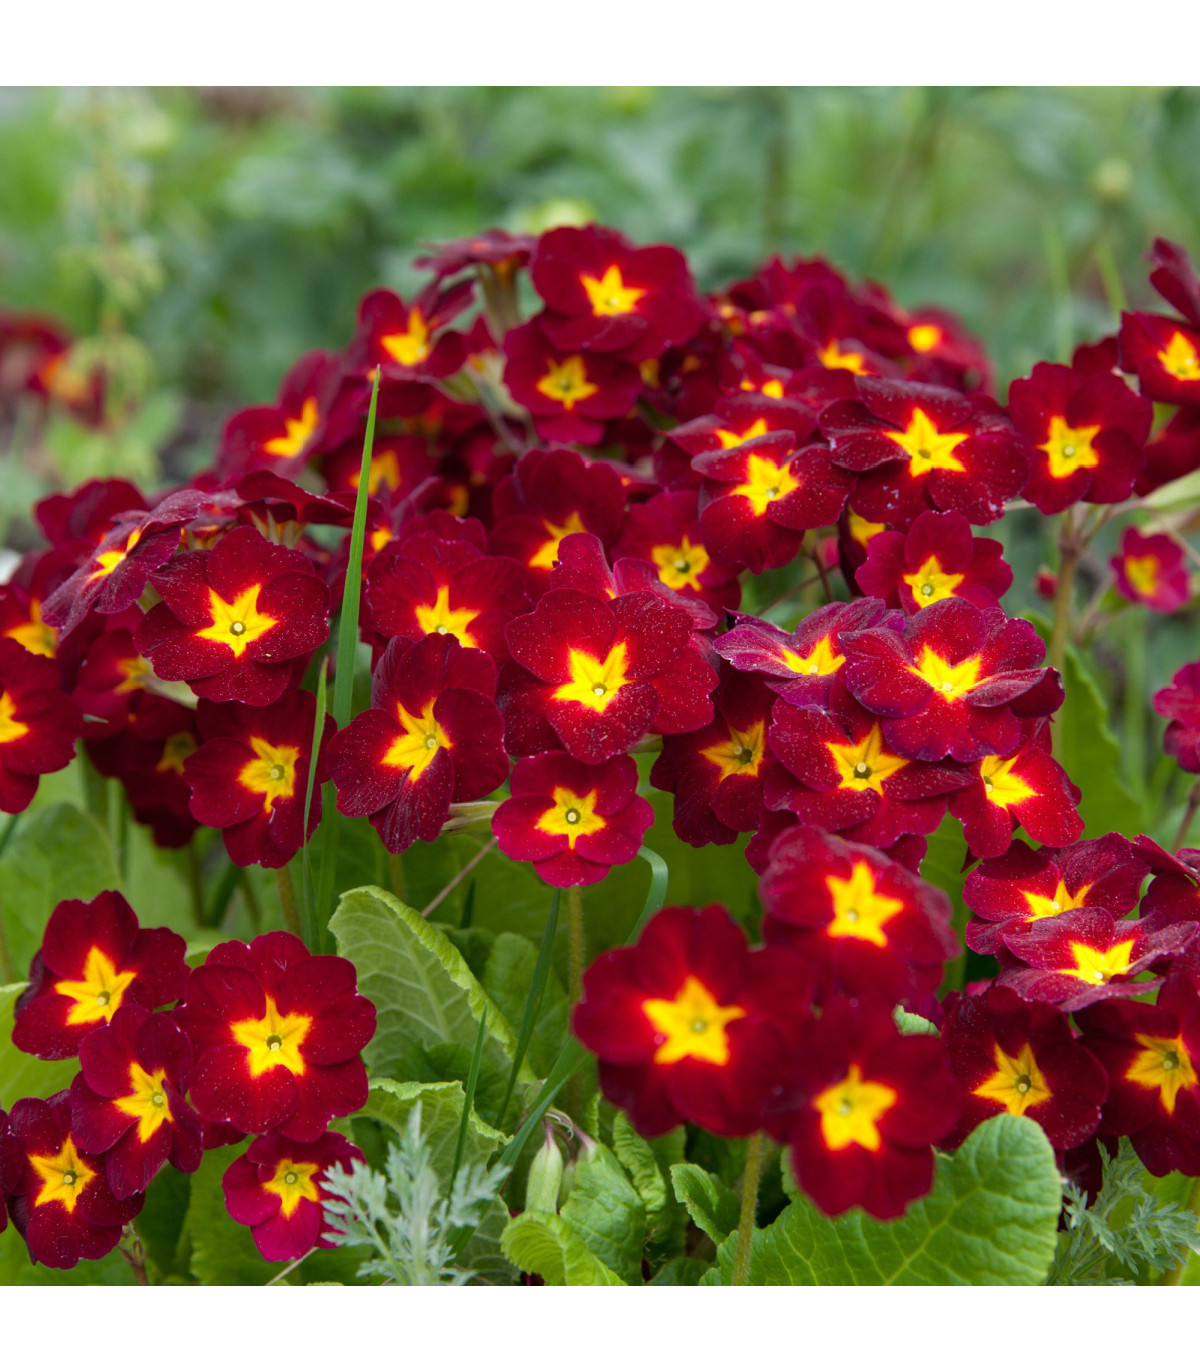 Prvosienka Inara F1 Late Red - Primula elatior - semená prvosienky - 20 ks